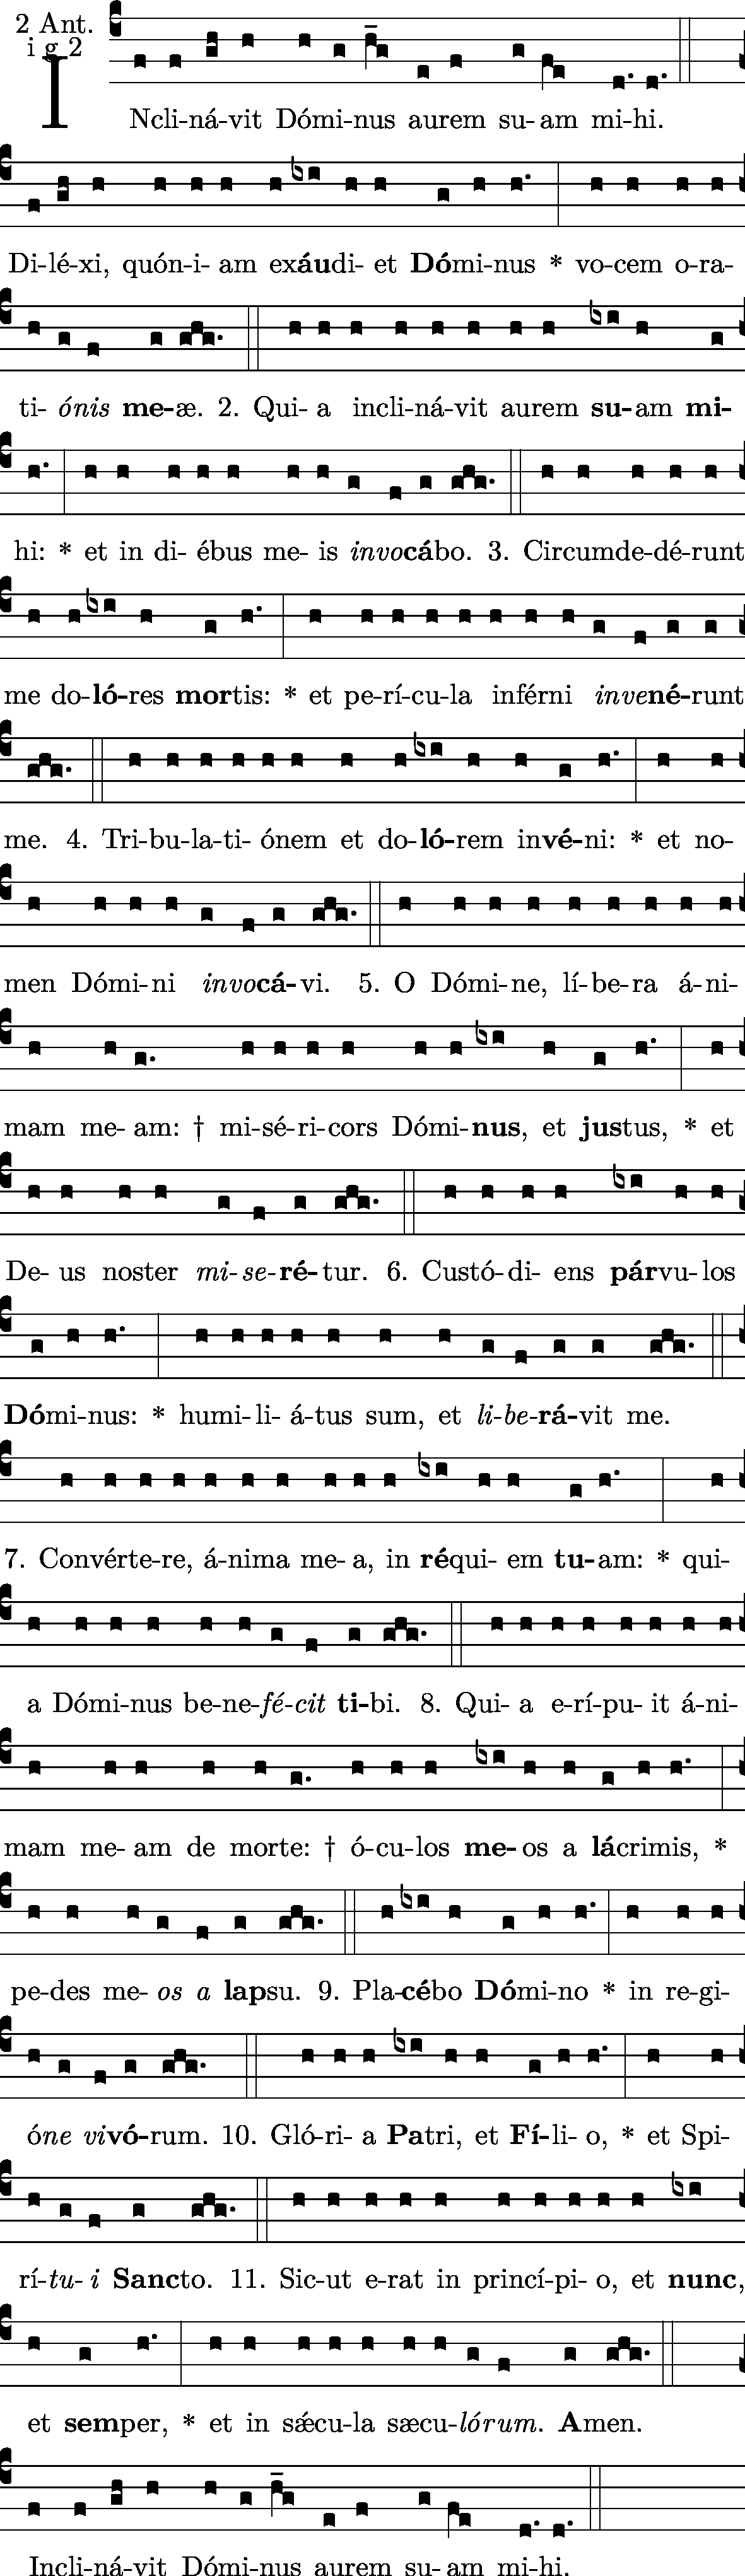 Vesperas Inclinavit Neumz: (a Vesp - capella) Dominus 1g2 2 Fer Antiphona: -